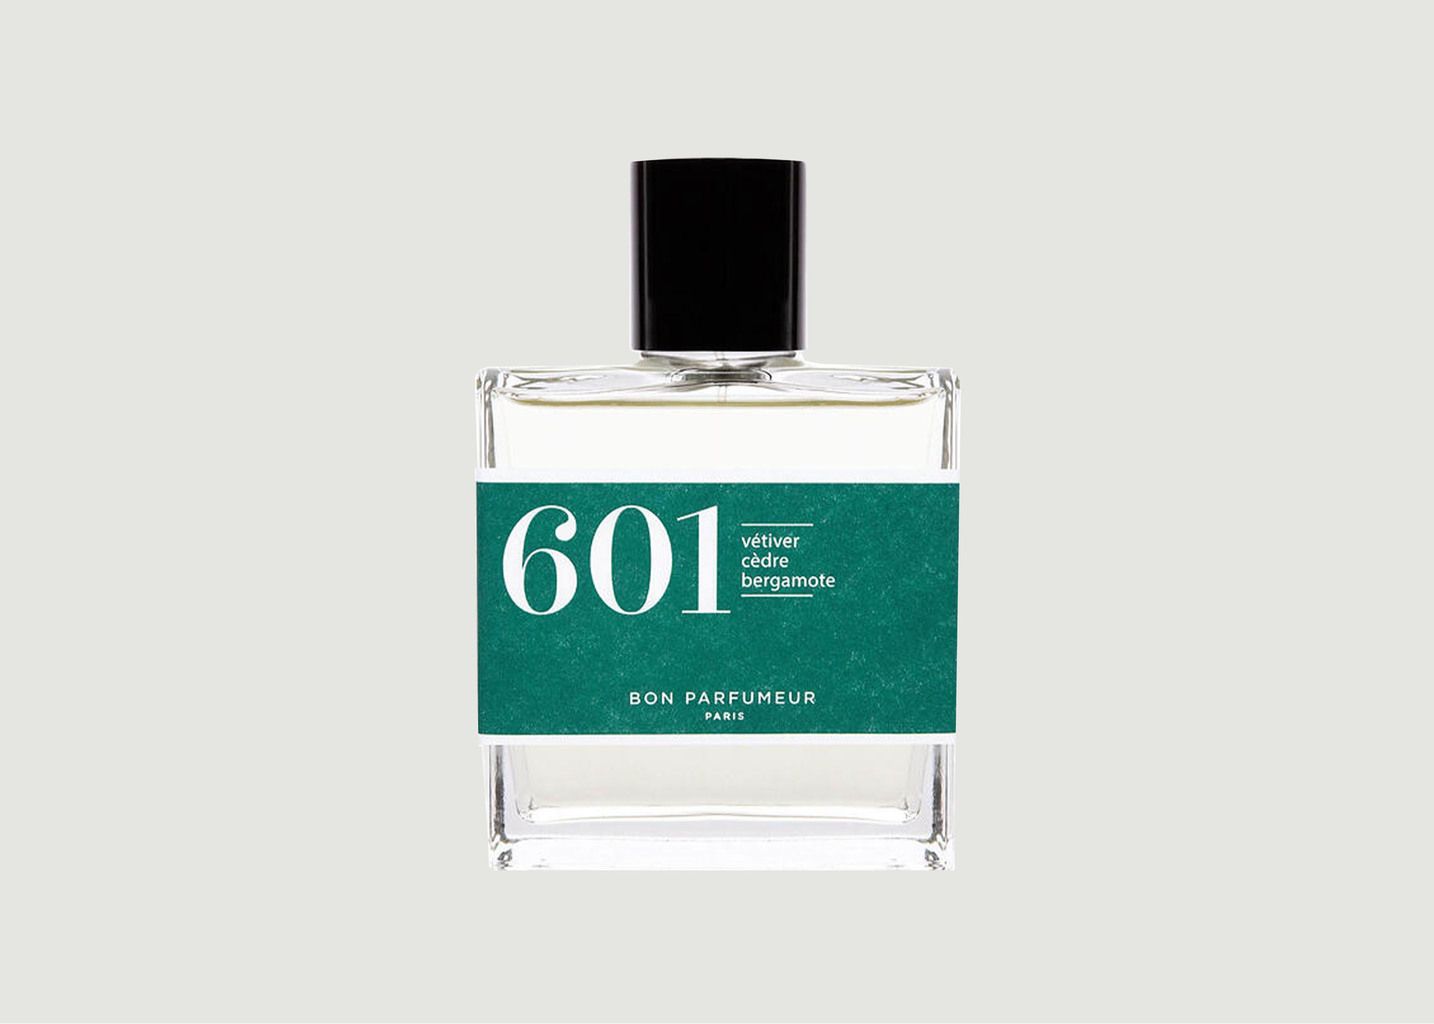 Eau de Parfum 601 : Vétiver, Cèdre, Bergamote - Bon Parfumeur